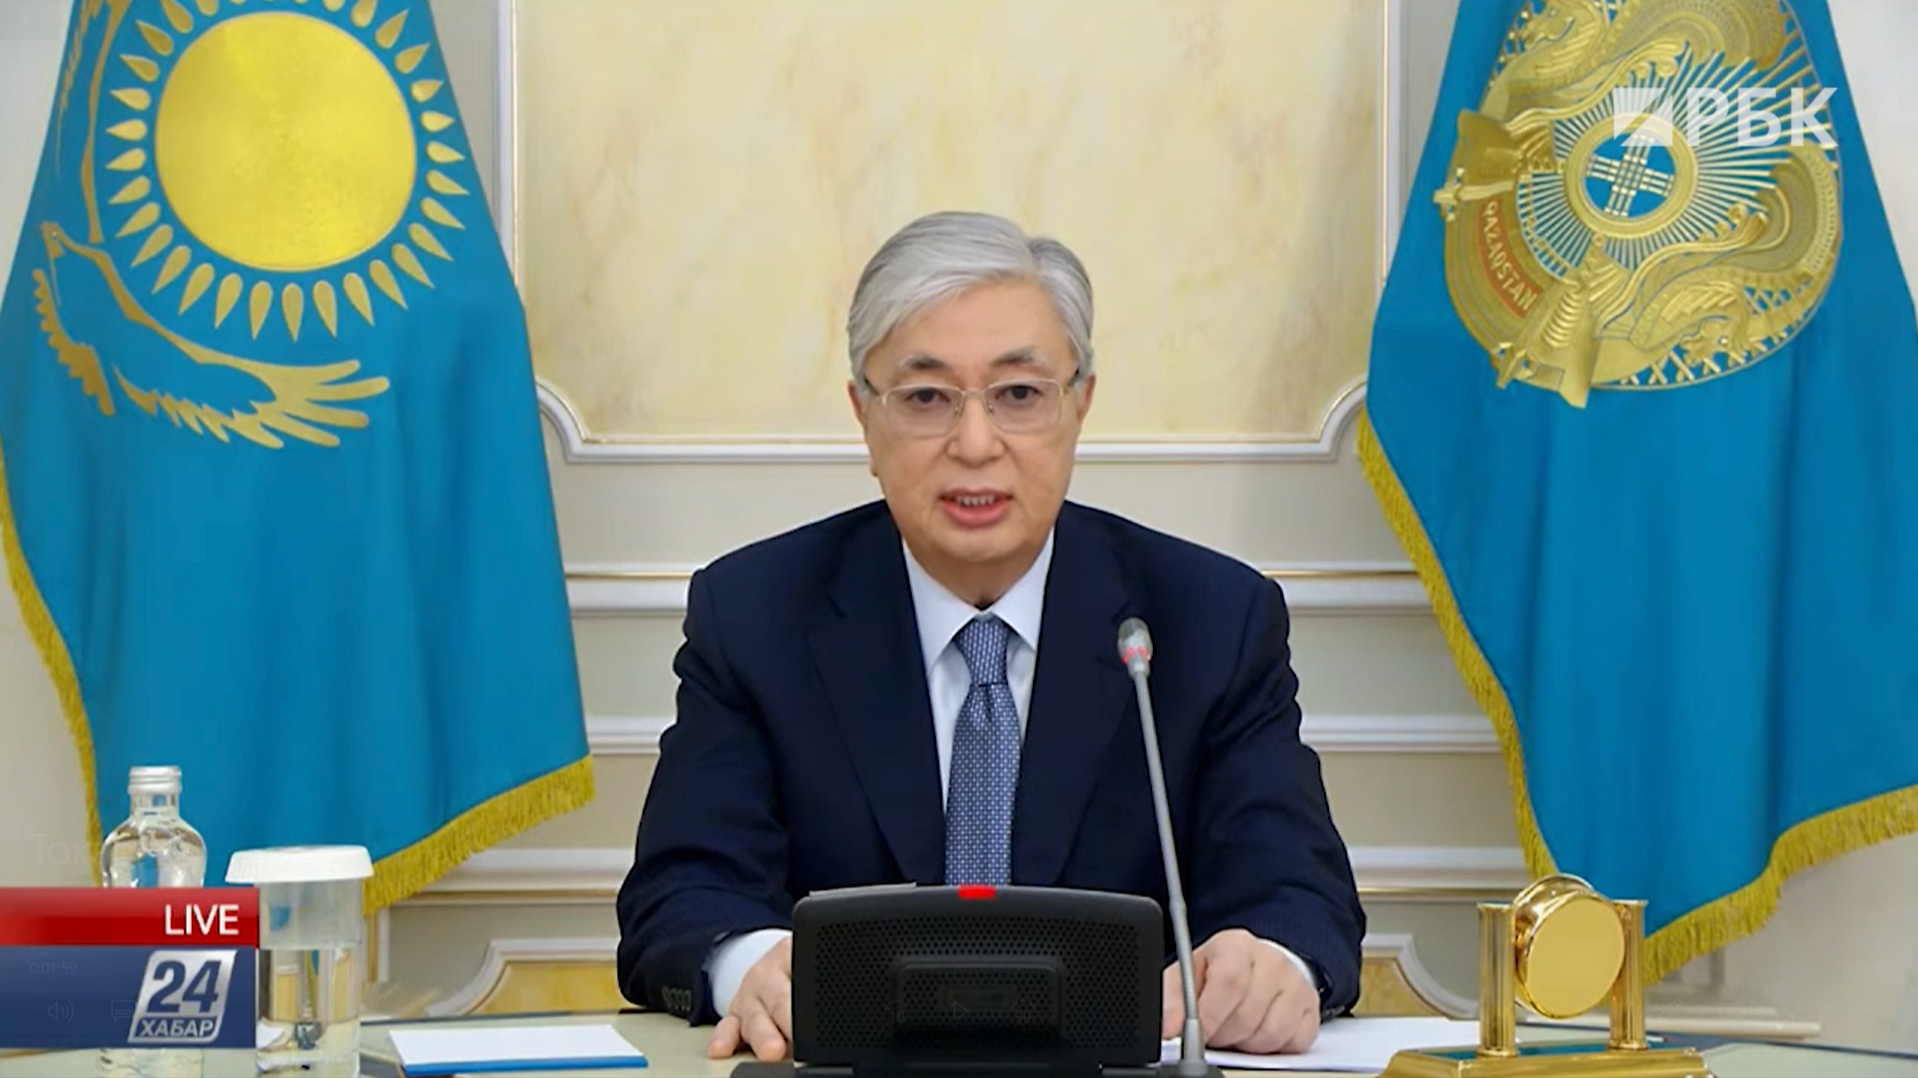 Бизнес отдаст должное: что сказал Токаев новому правительству Казахстана"/>













